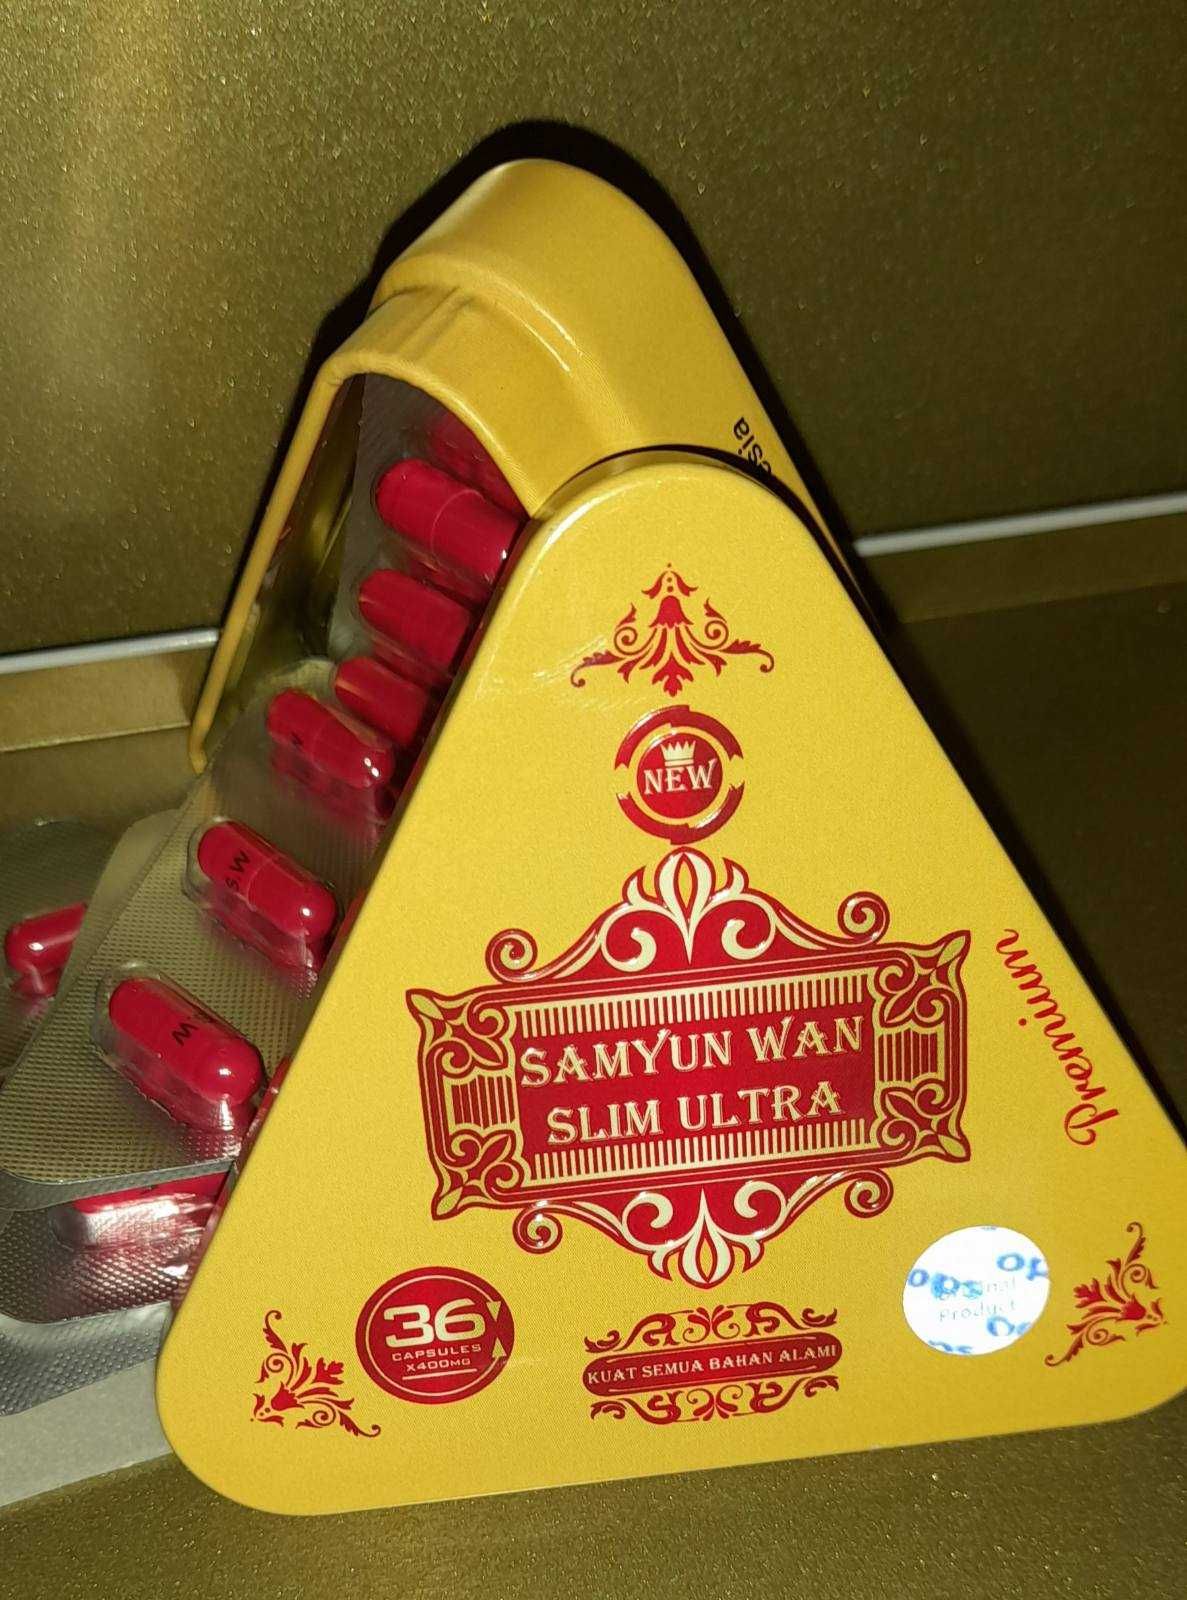 Samyun Wan Slim Ultra капсулы для похудения Самуин Ван Слим Ультра